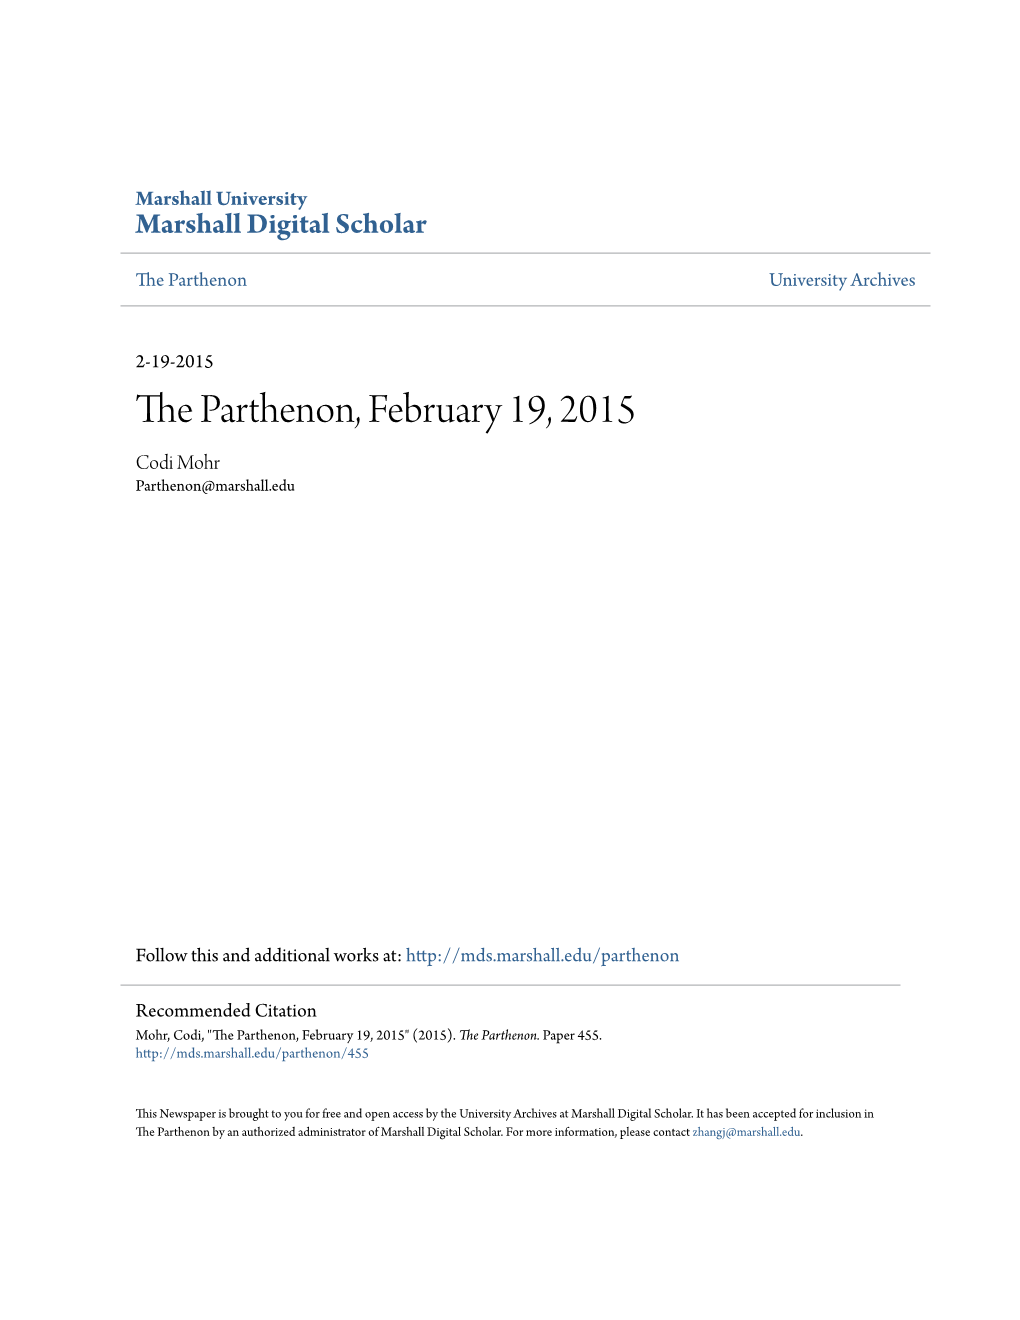 The Parthenon, February 19, 2015